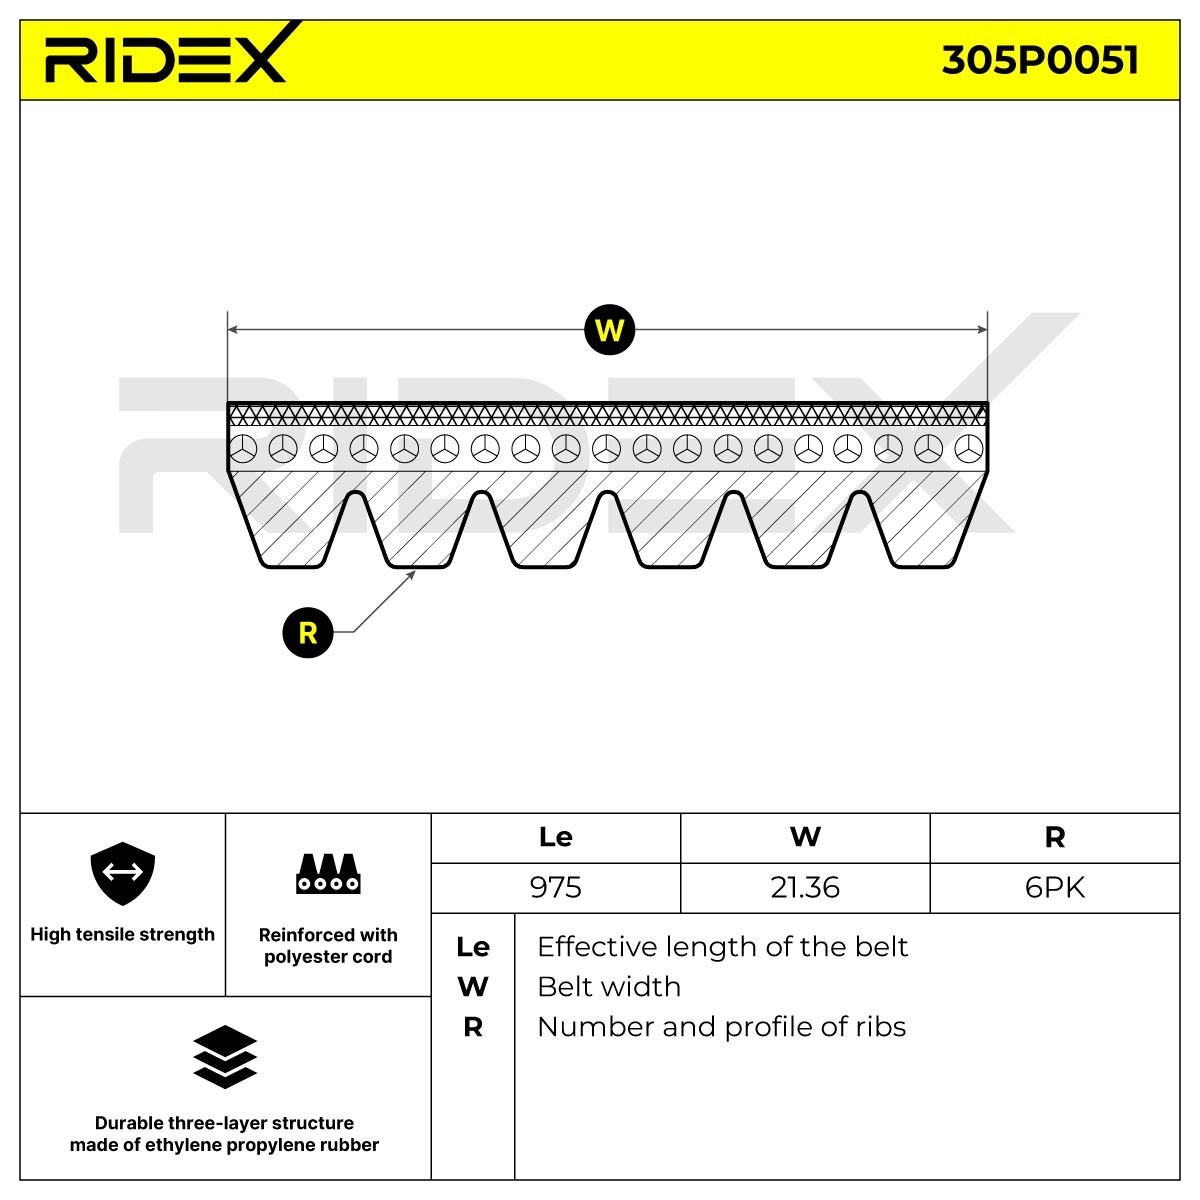 RIDEX Drive belt 305P0051